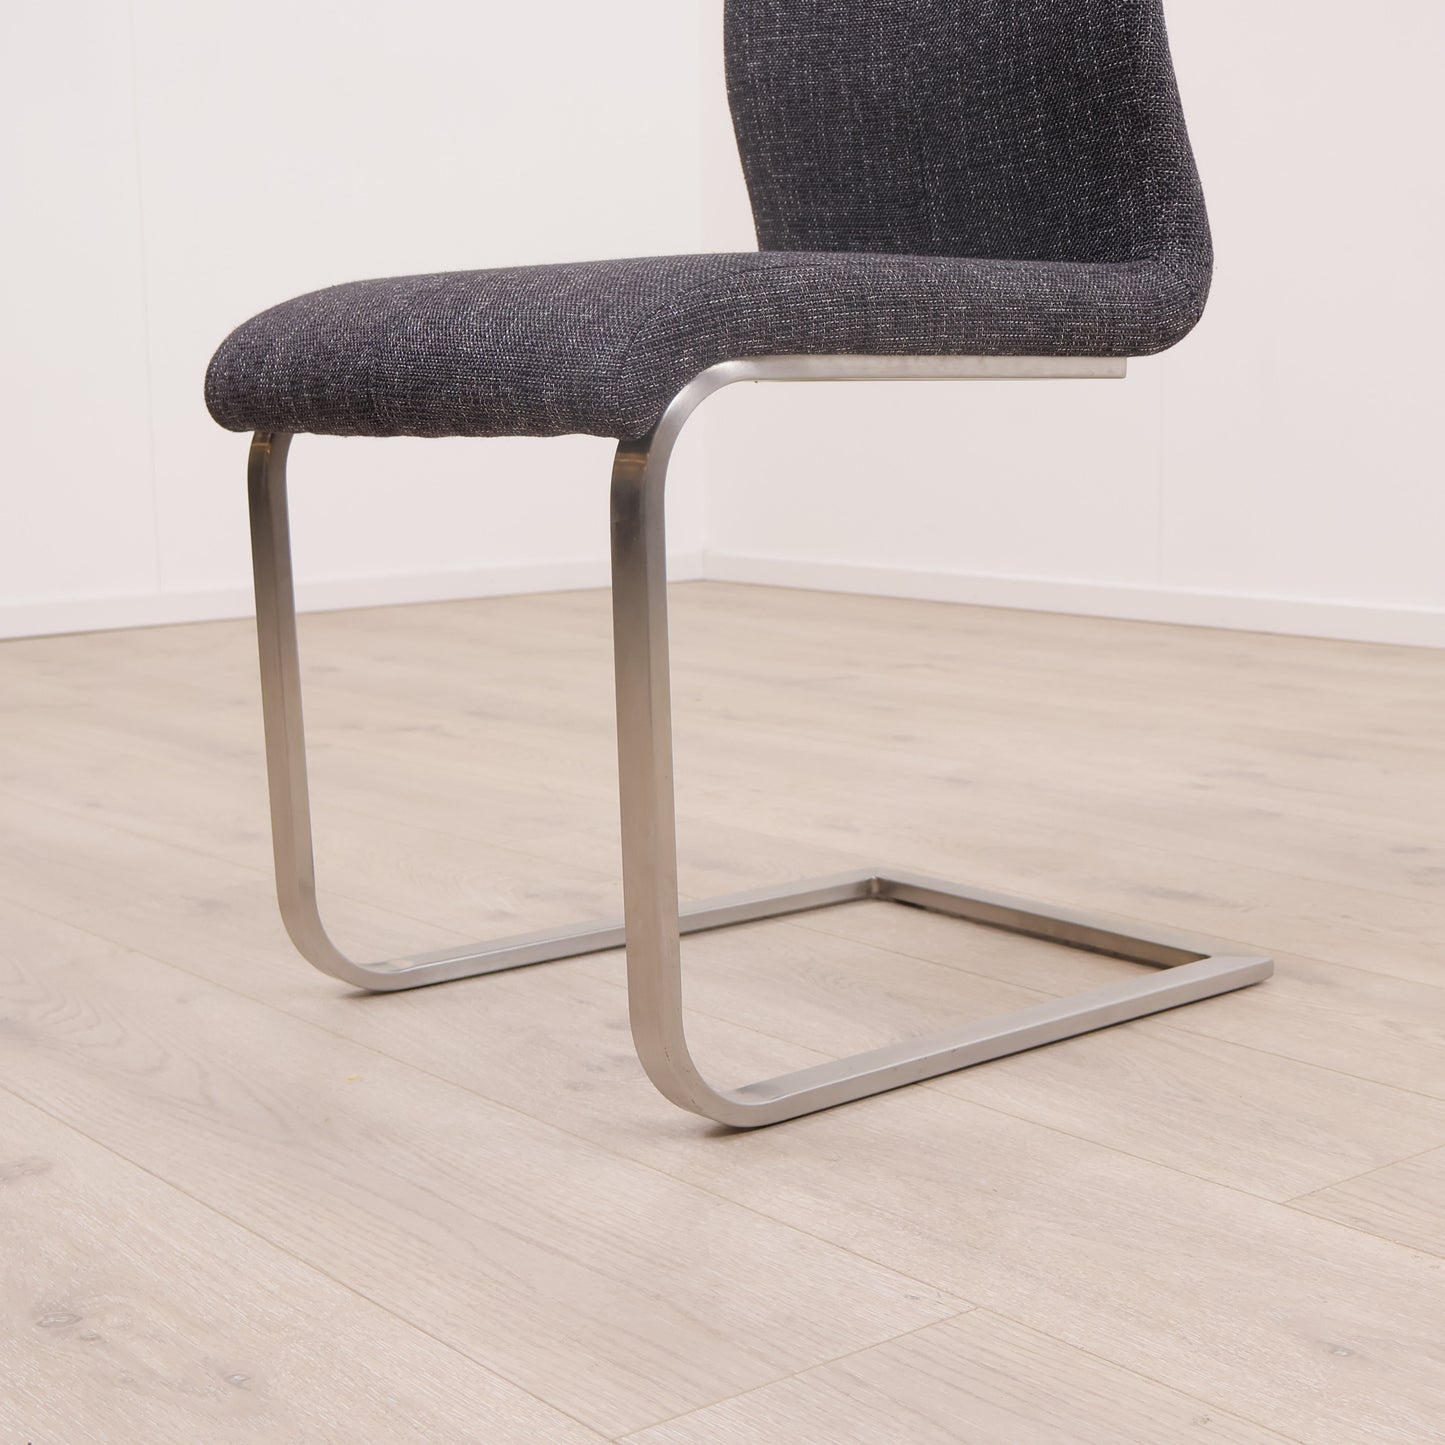 A-møbler spisestol i minimalistisk design